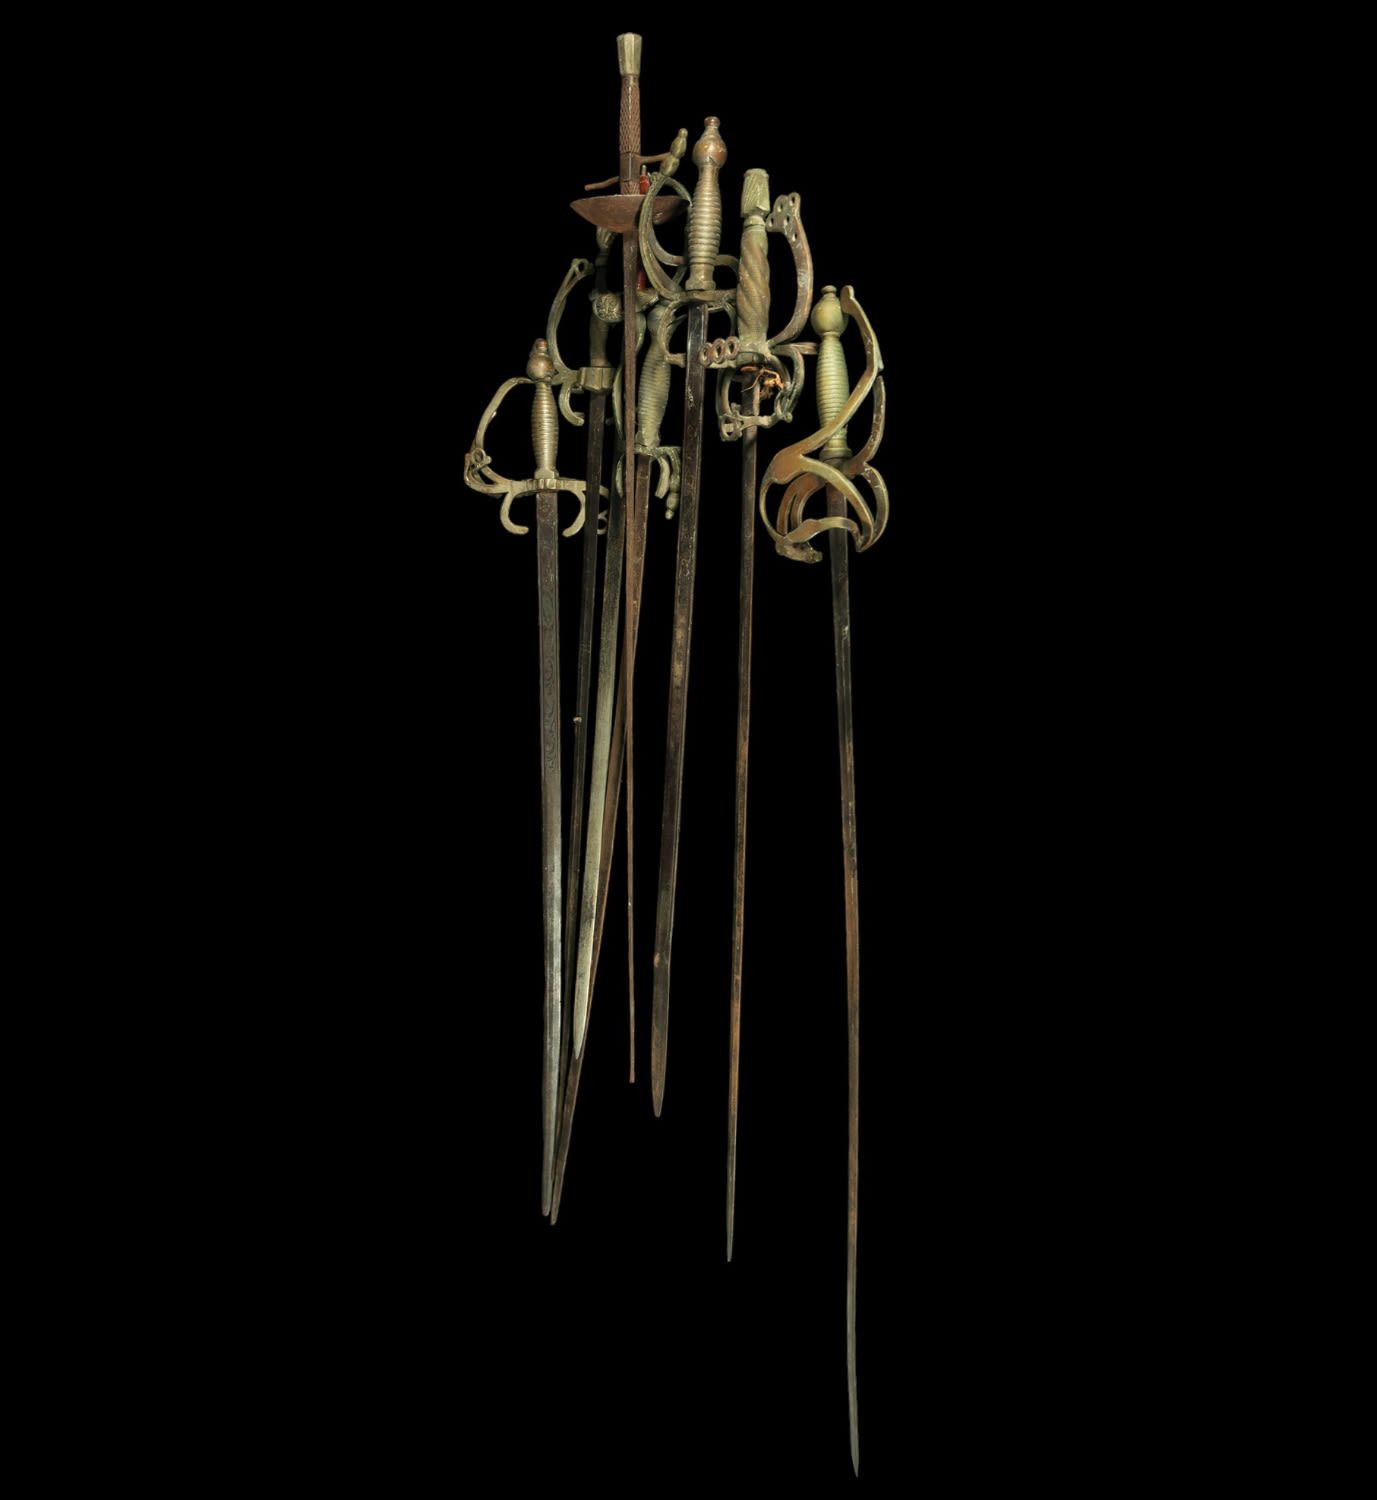 Null Lot de 8 épées, 20e siècle
En acier et bronze doré